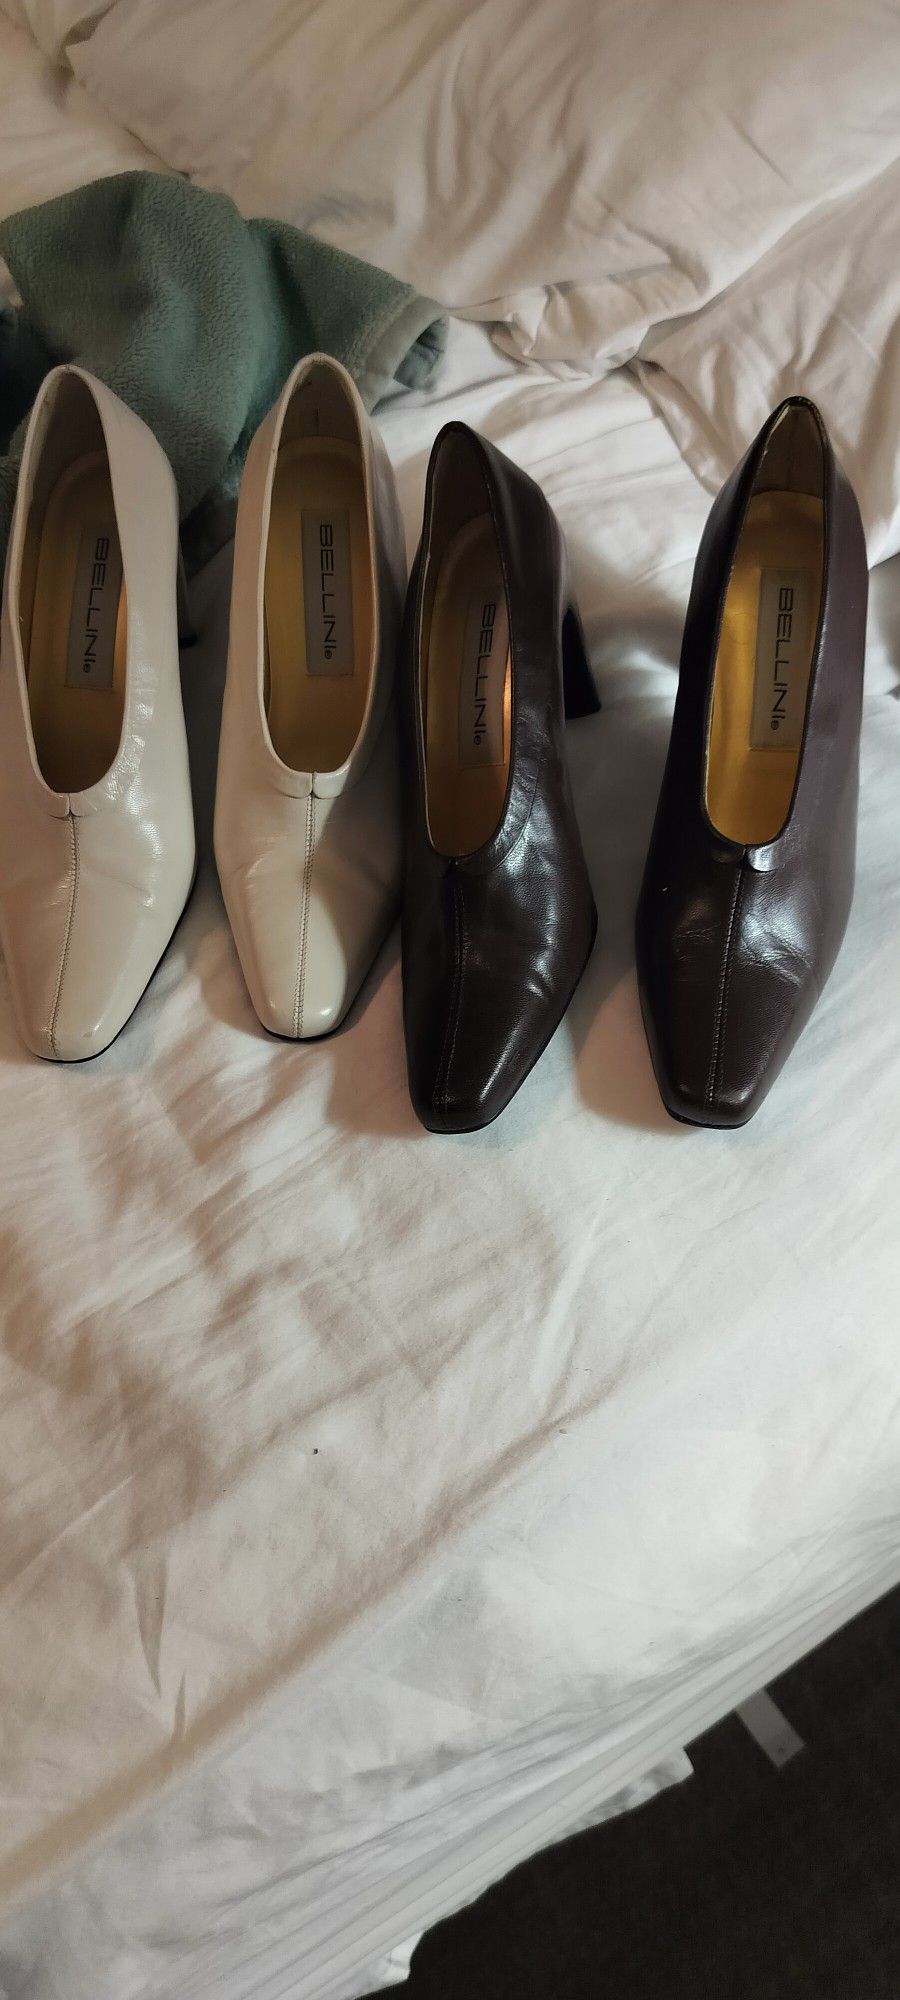 D E L L I N I Women's Heel Shoe Size 7.5 Medium Two Pairs $5 Each